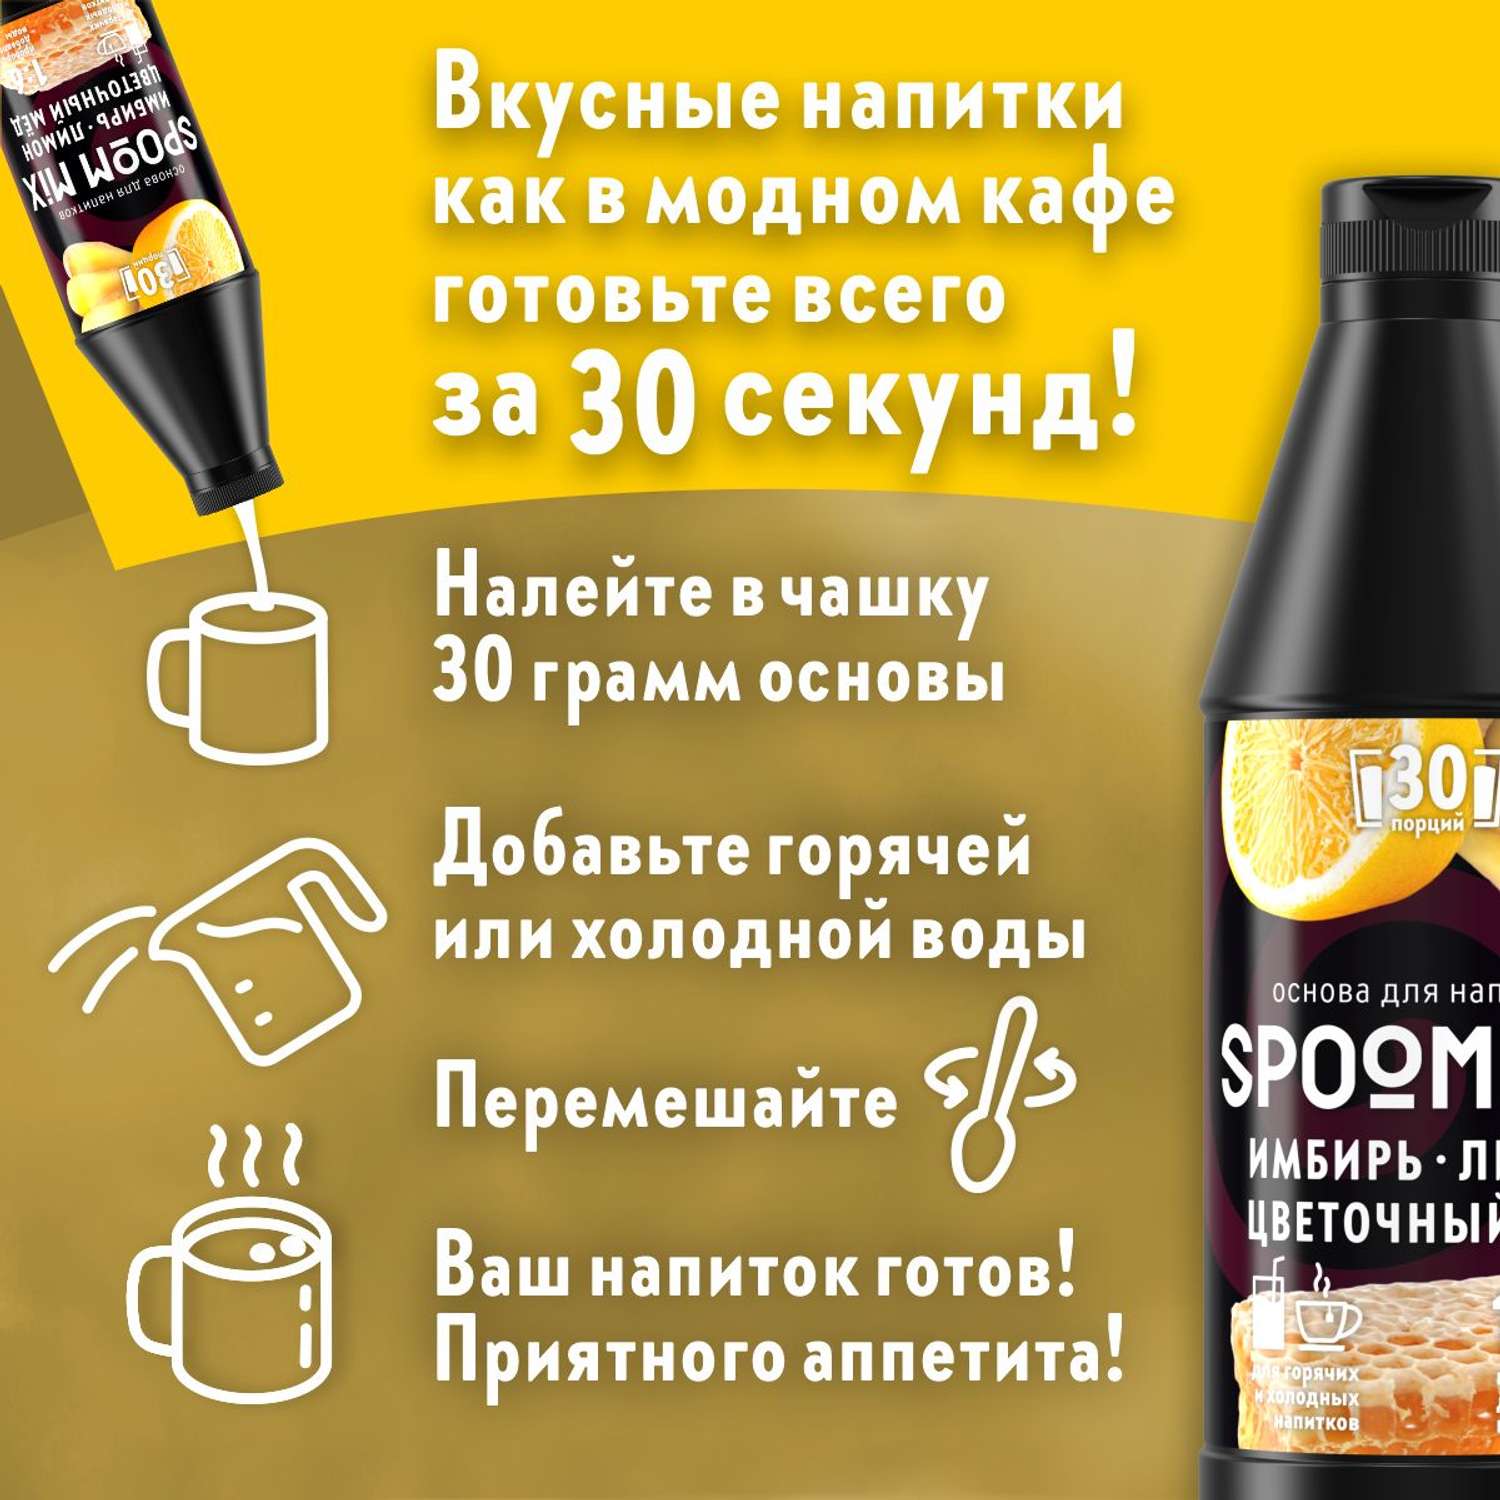 Основа для напитков SPOOM MIX Имбирь лимон цветочный мёд 1 кг - фото 2